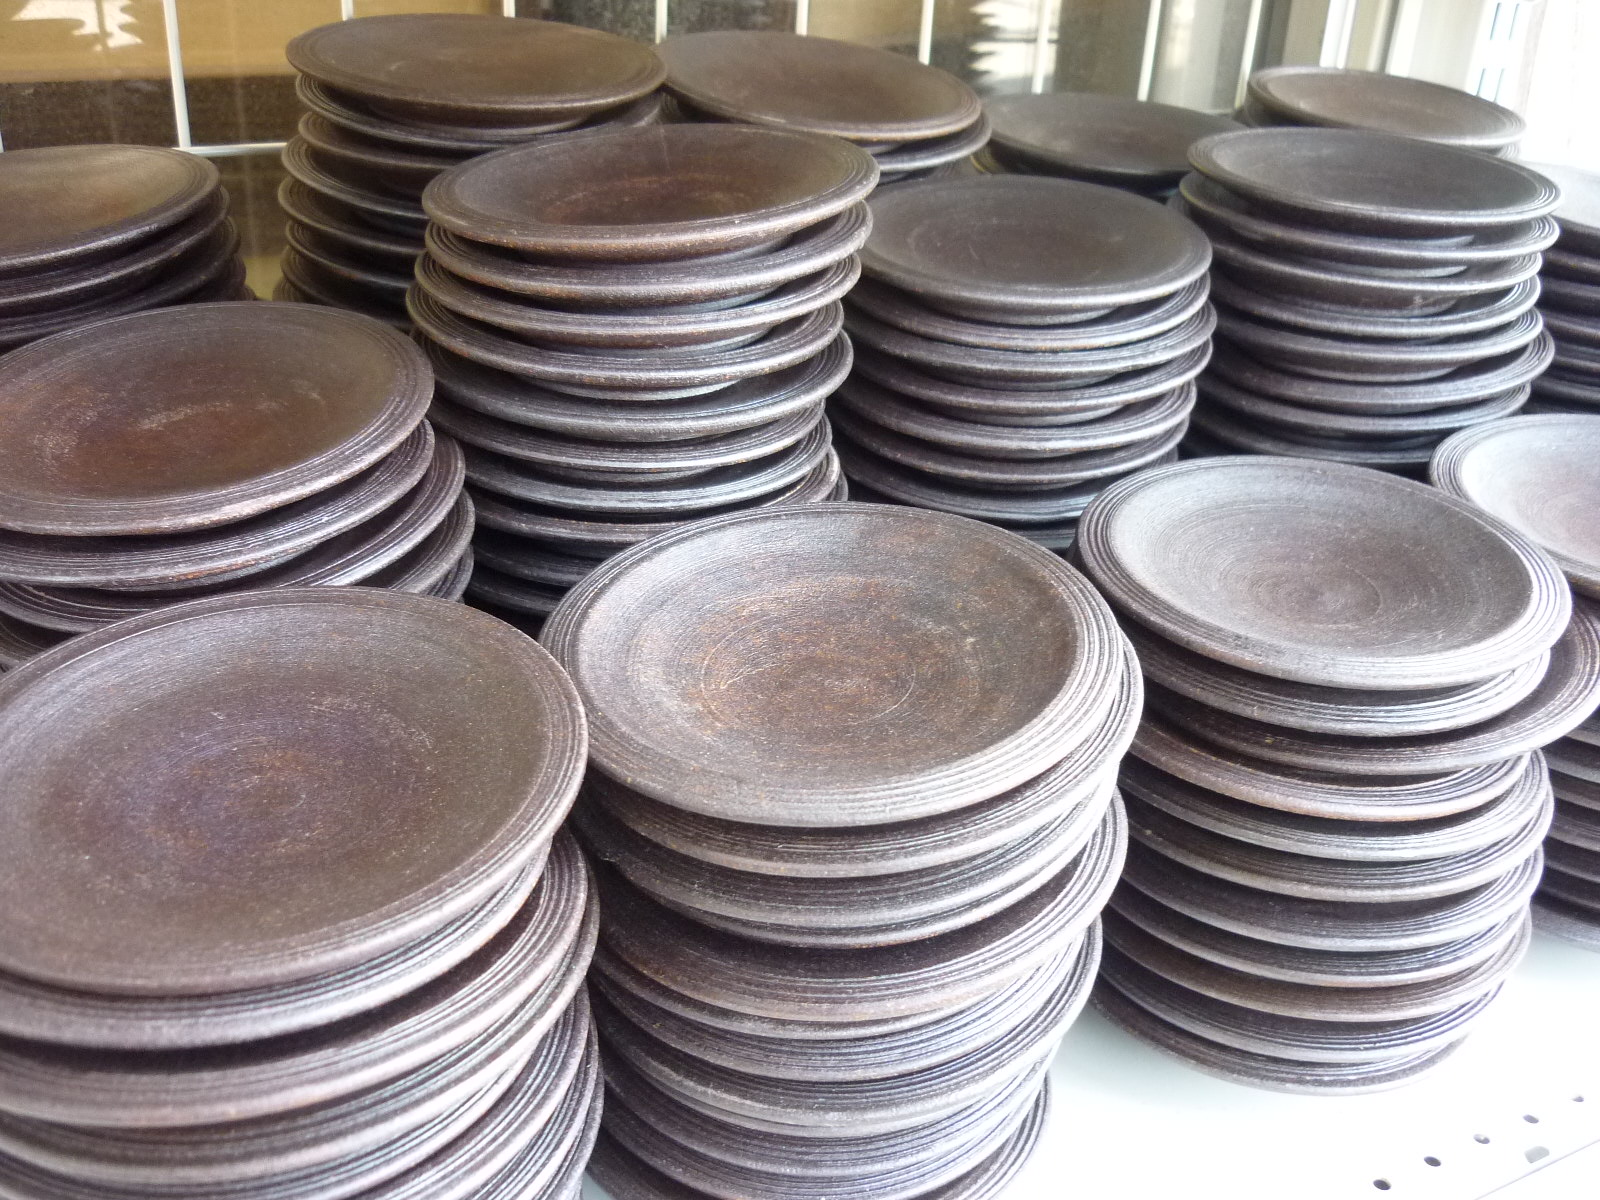  食器特集34  プロユースの食器 大量買取しました！ 小皿 調味料皿 薬味皿 鉄釉 瀬戸物 | 愛知と岐阜のリサイクルショップ 再良市場